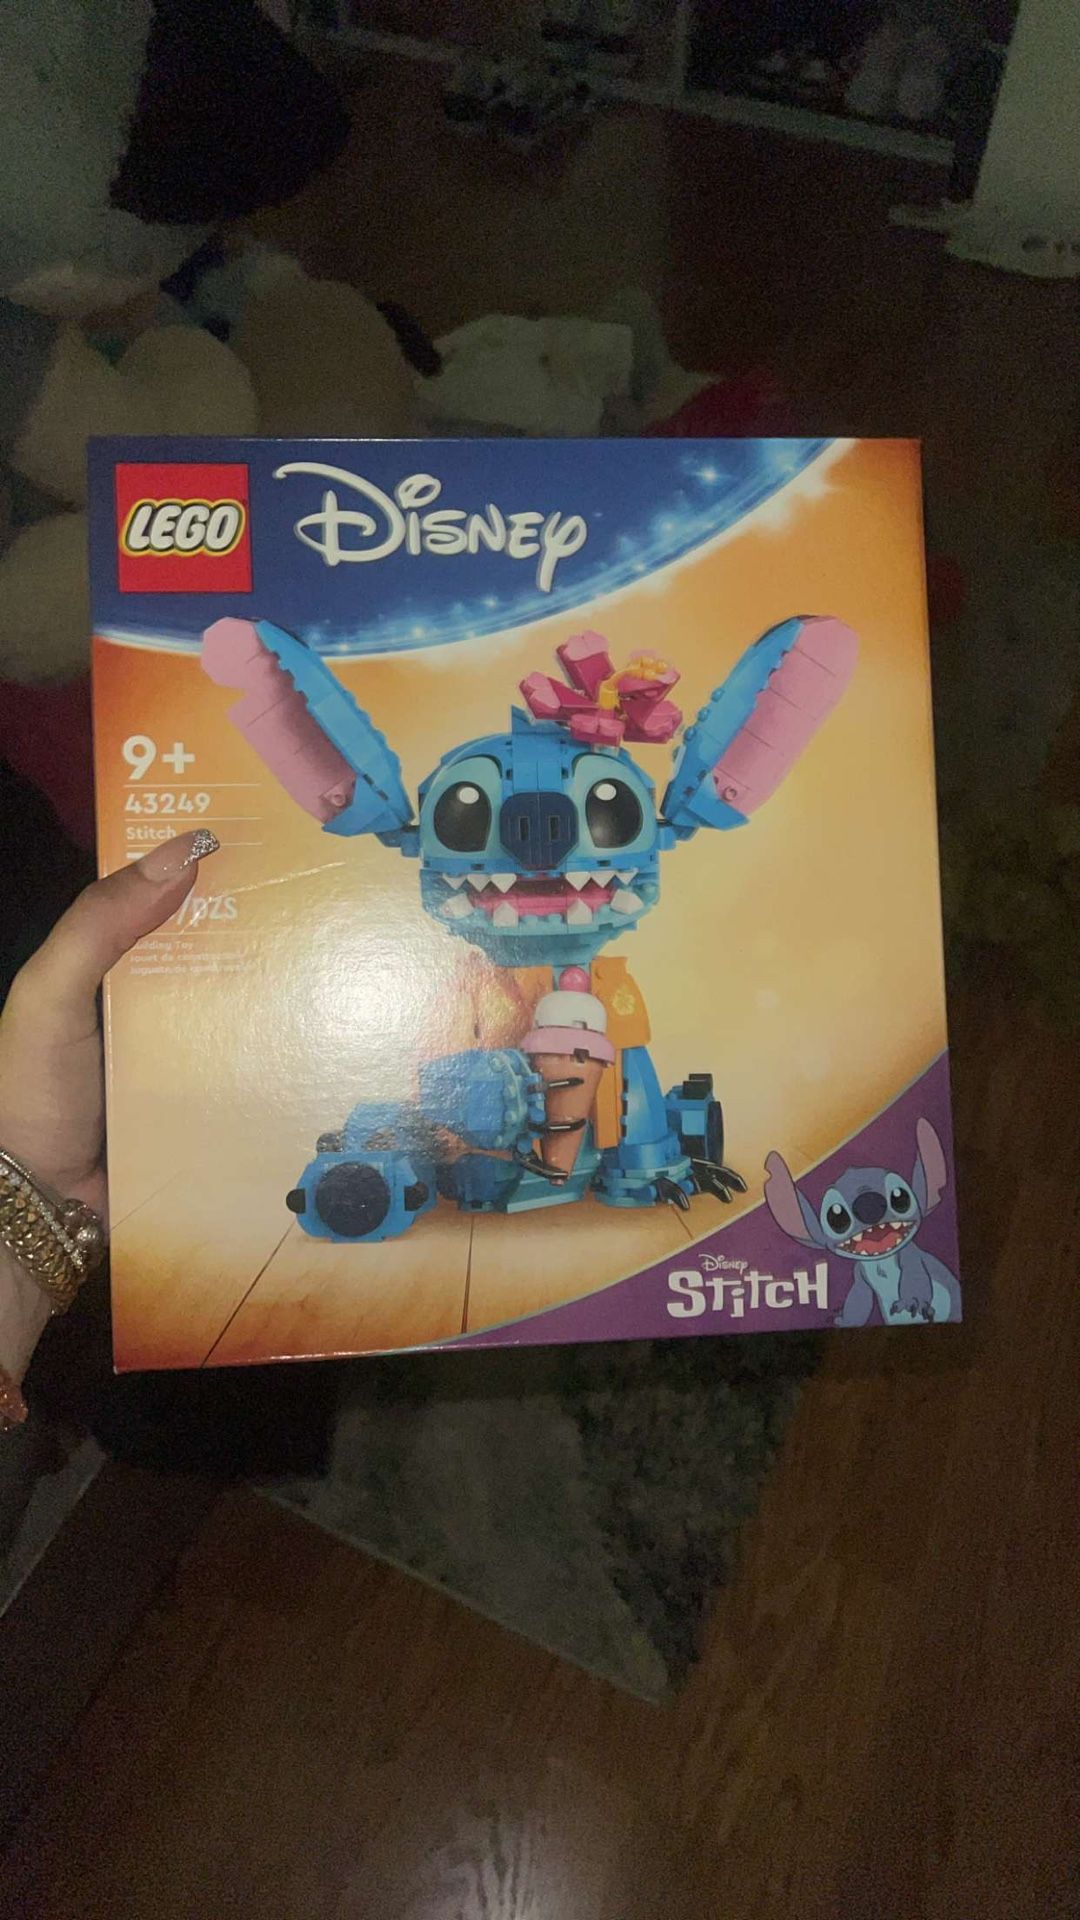 Disney Stitch Lego 43249 - NEW RELEASE 